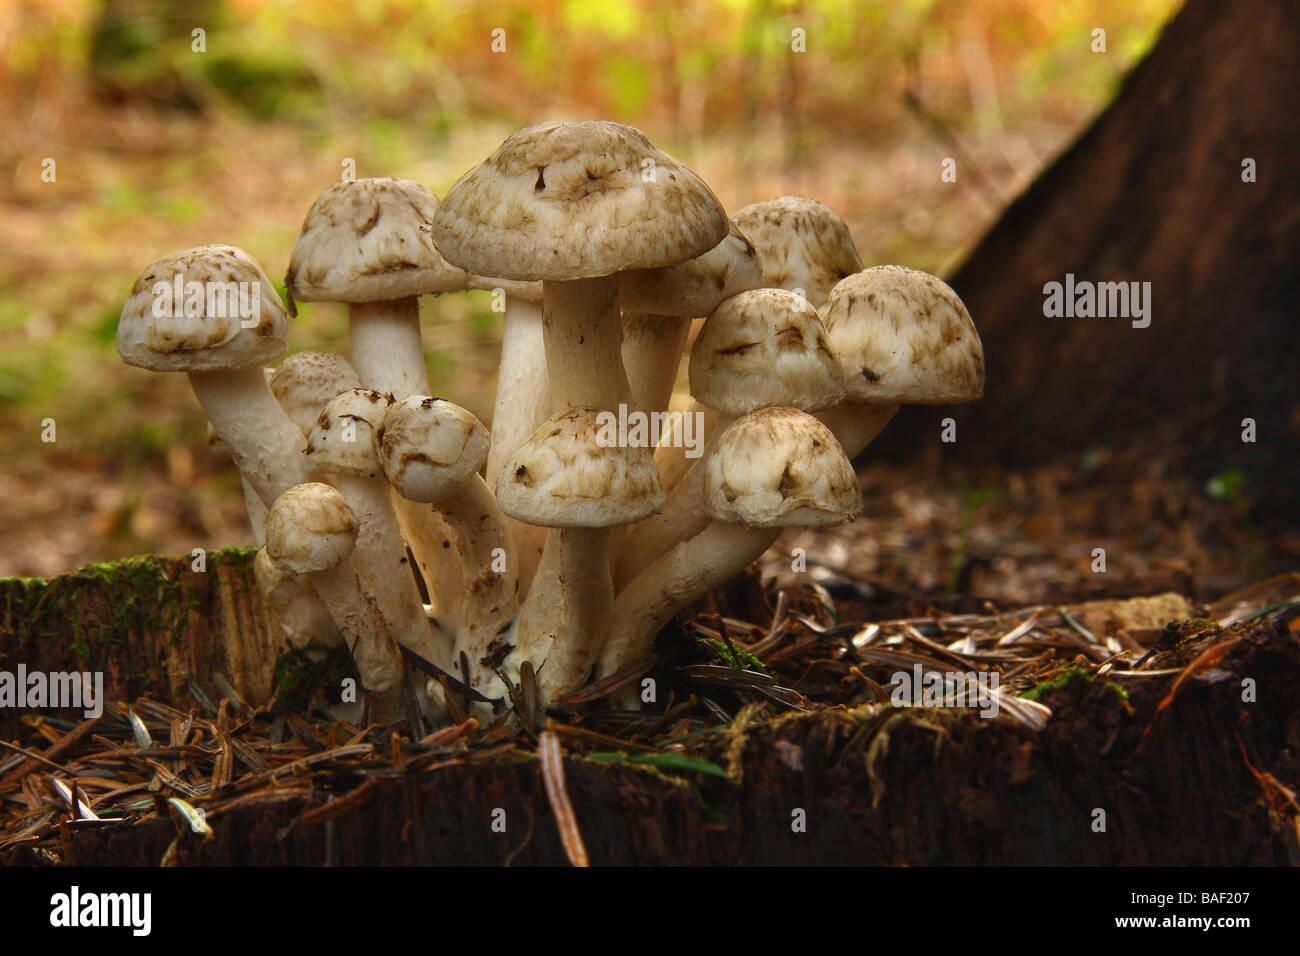 Un bouquet de champignons blancs sur une souche dans les bois Limousin France Banque D'Images